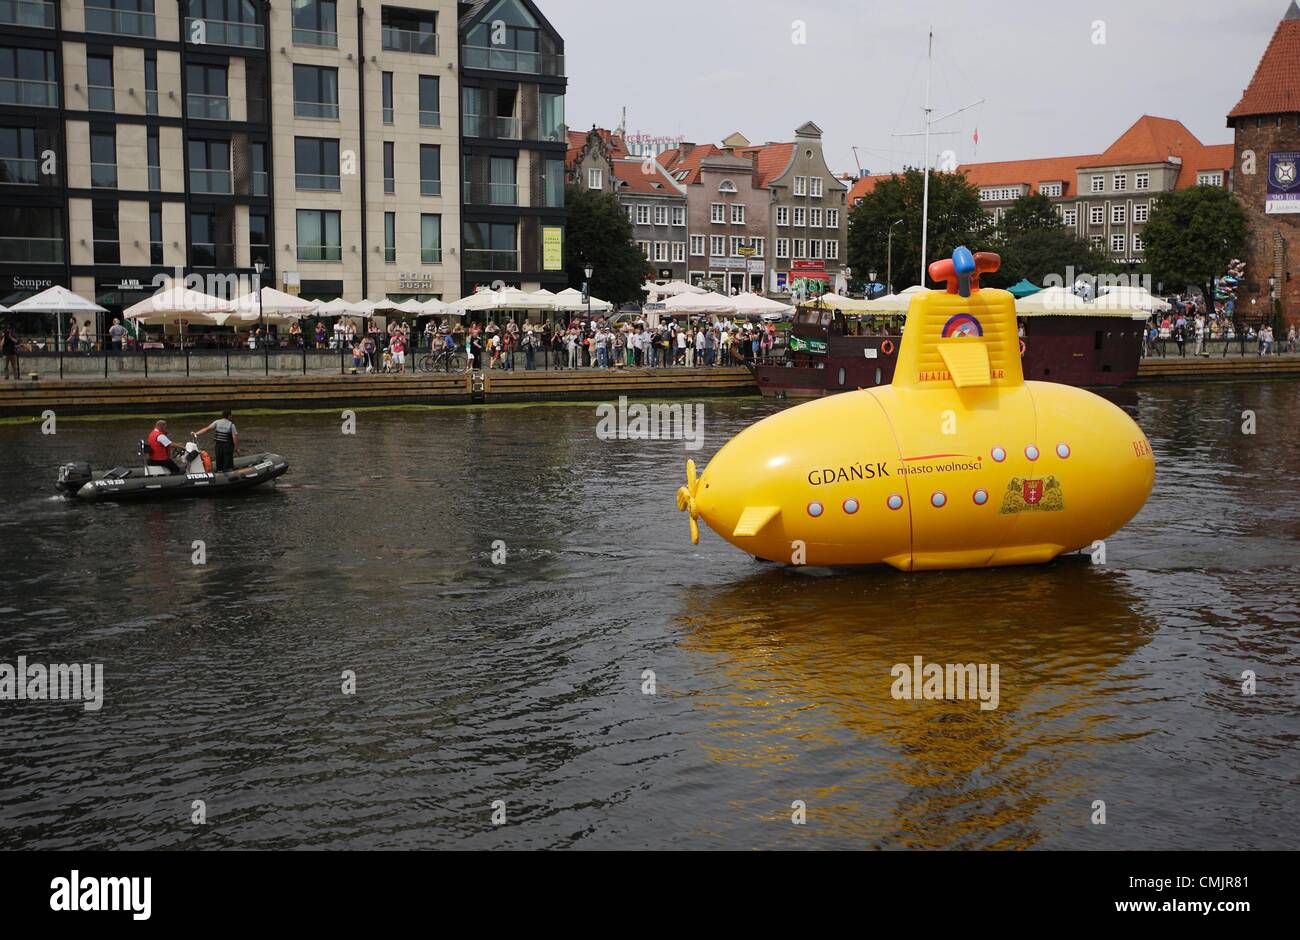 Gdansk, Pologne 18 mai, août 2012 Sous-marin jaune sur la rivière Motlawa. Performance organisée dans le 50e anniversaire du premier concert des Beatles avec des membres de la bande. Sous-marin jaune est l'un des événements de la "Semaine de la légende - Gdansk, le jubilé des Beatles'. Banque D'Images